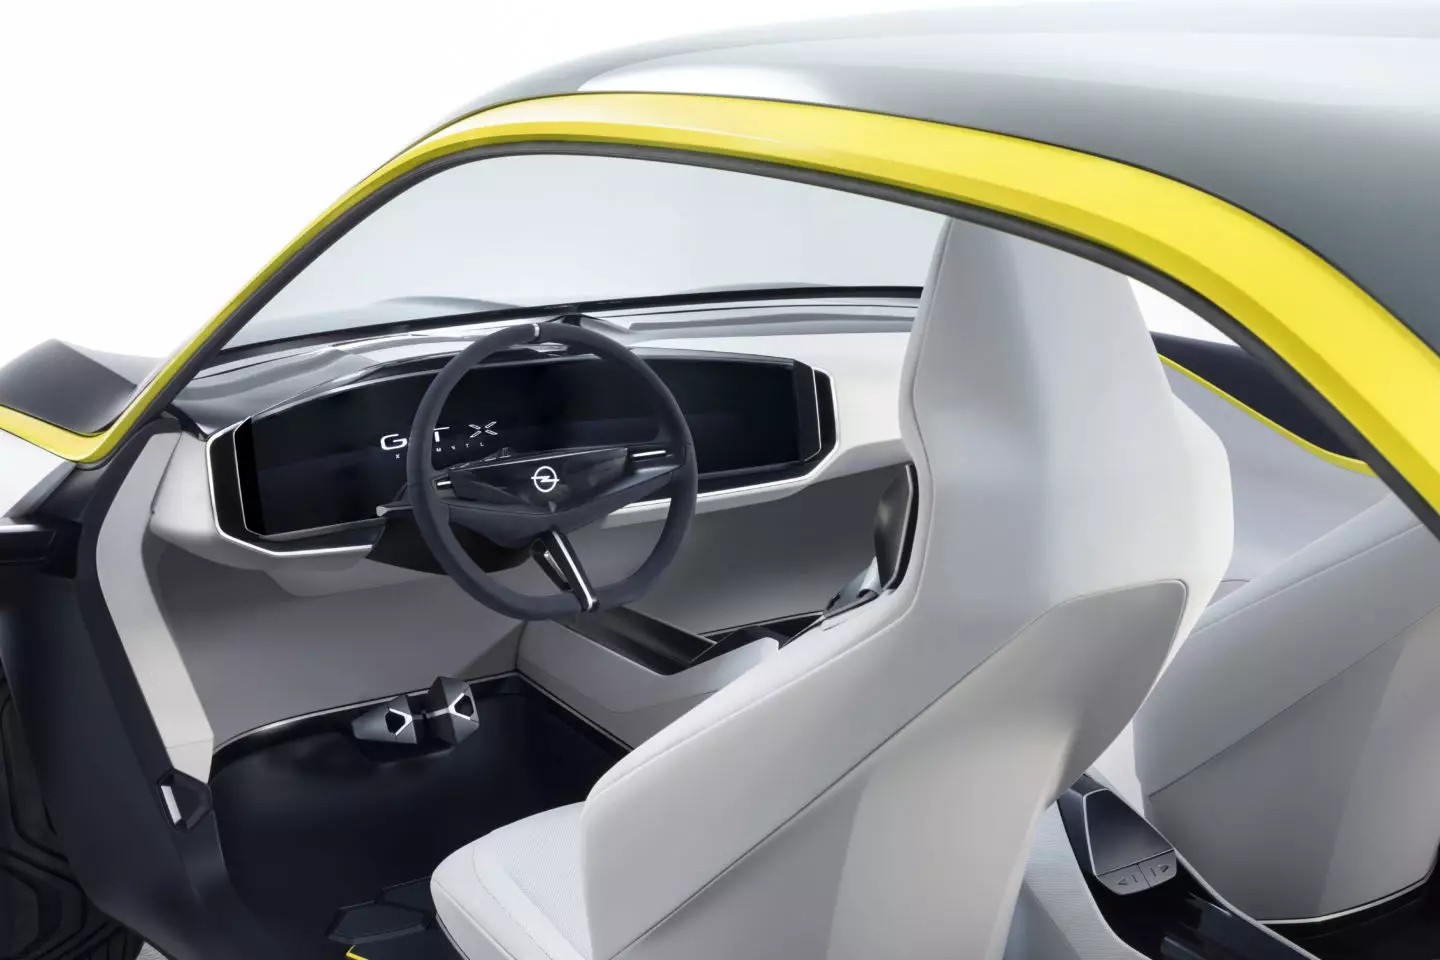 2018 Opel GT X تجرباتي